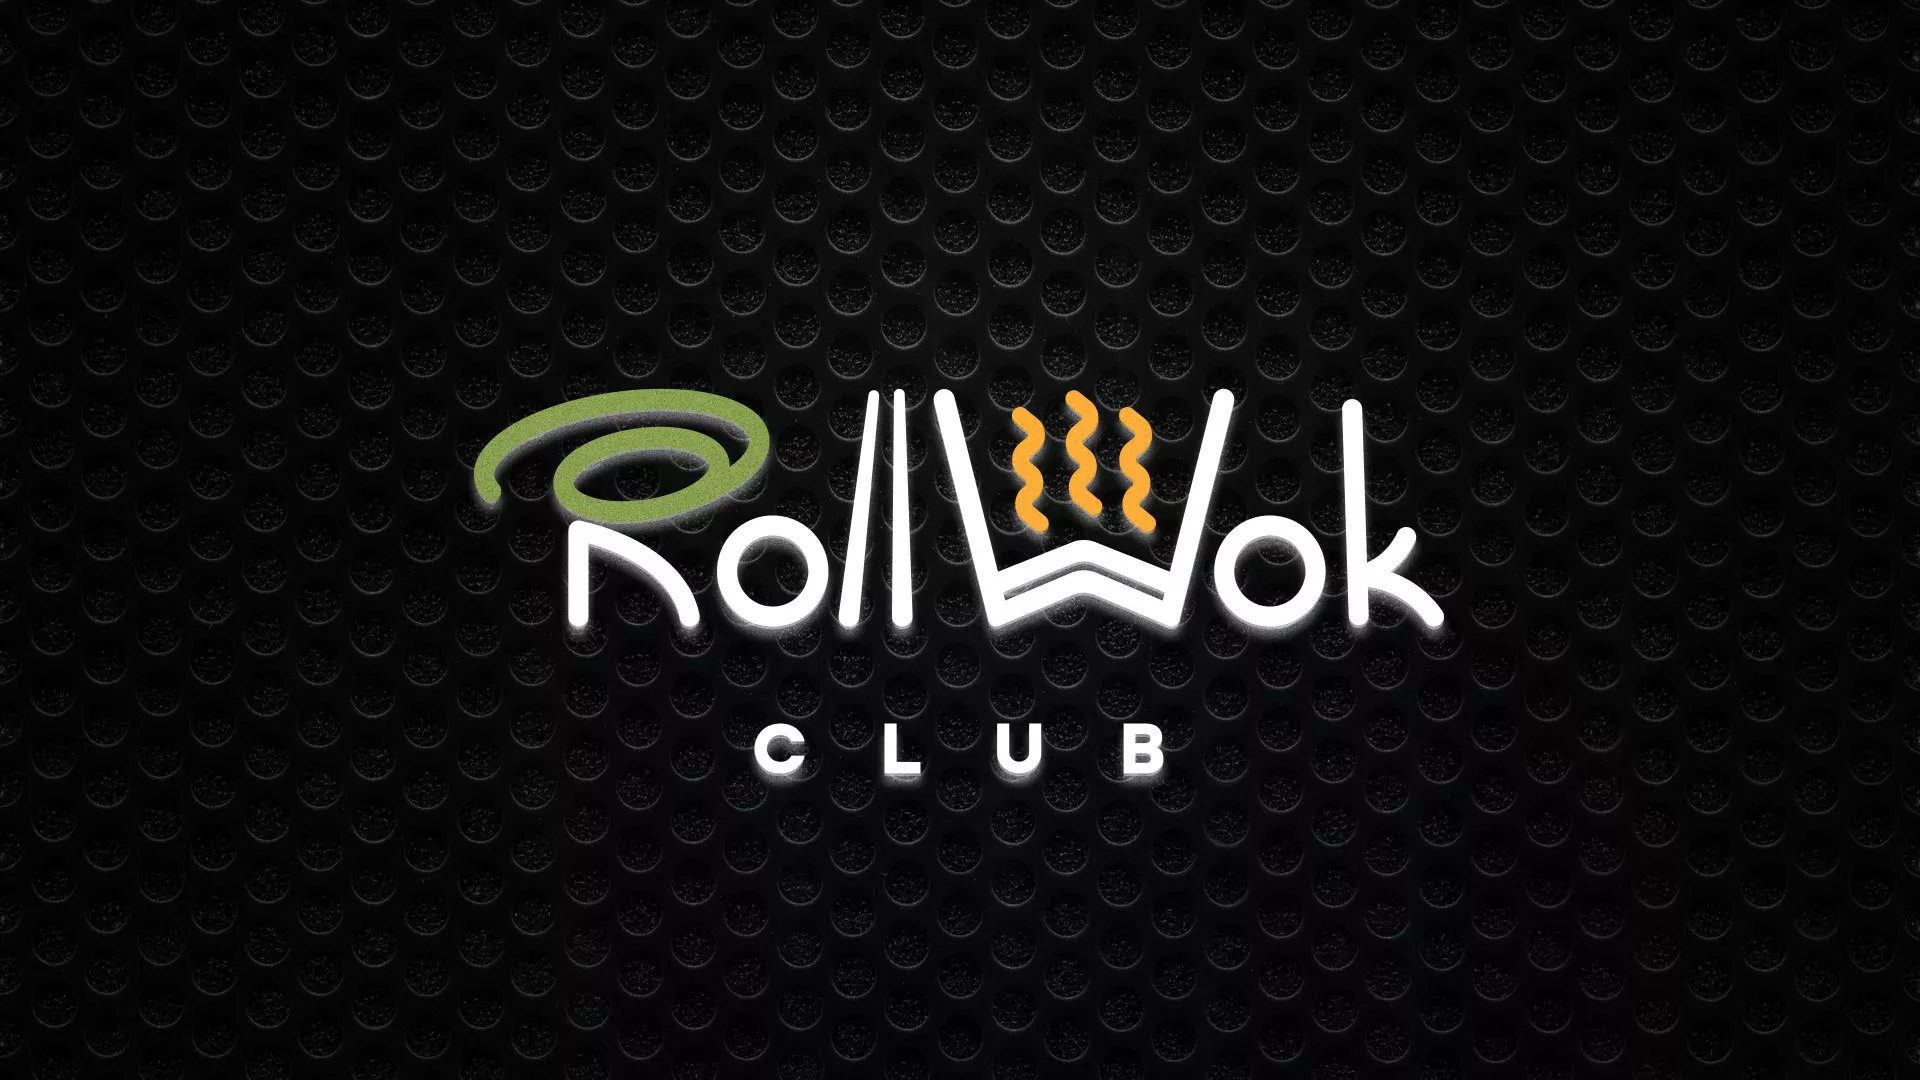 Брендирование торговых точек суши-бара «Roll Wok Club» в Весьегонске